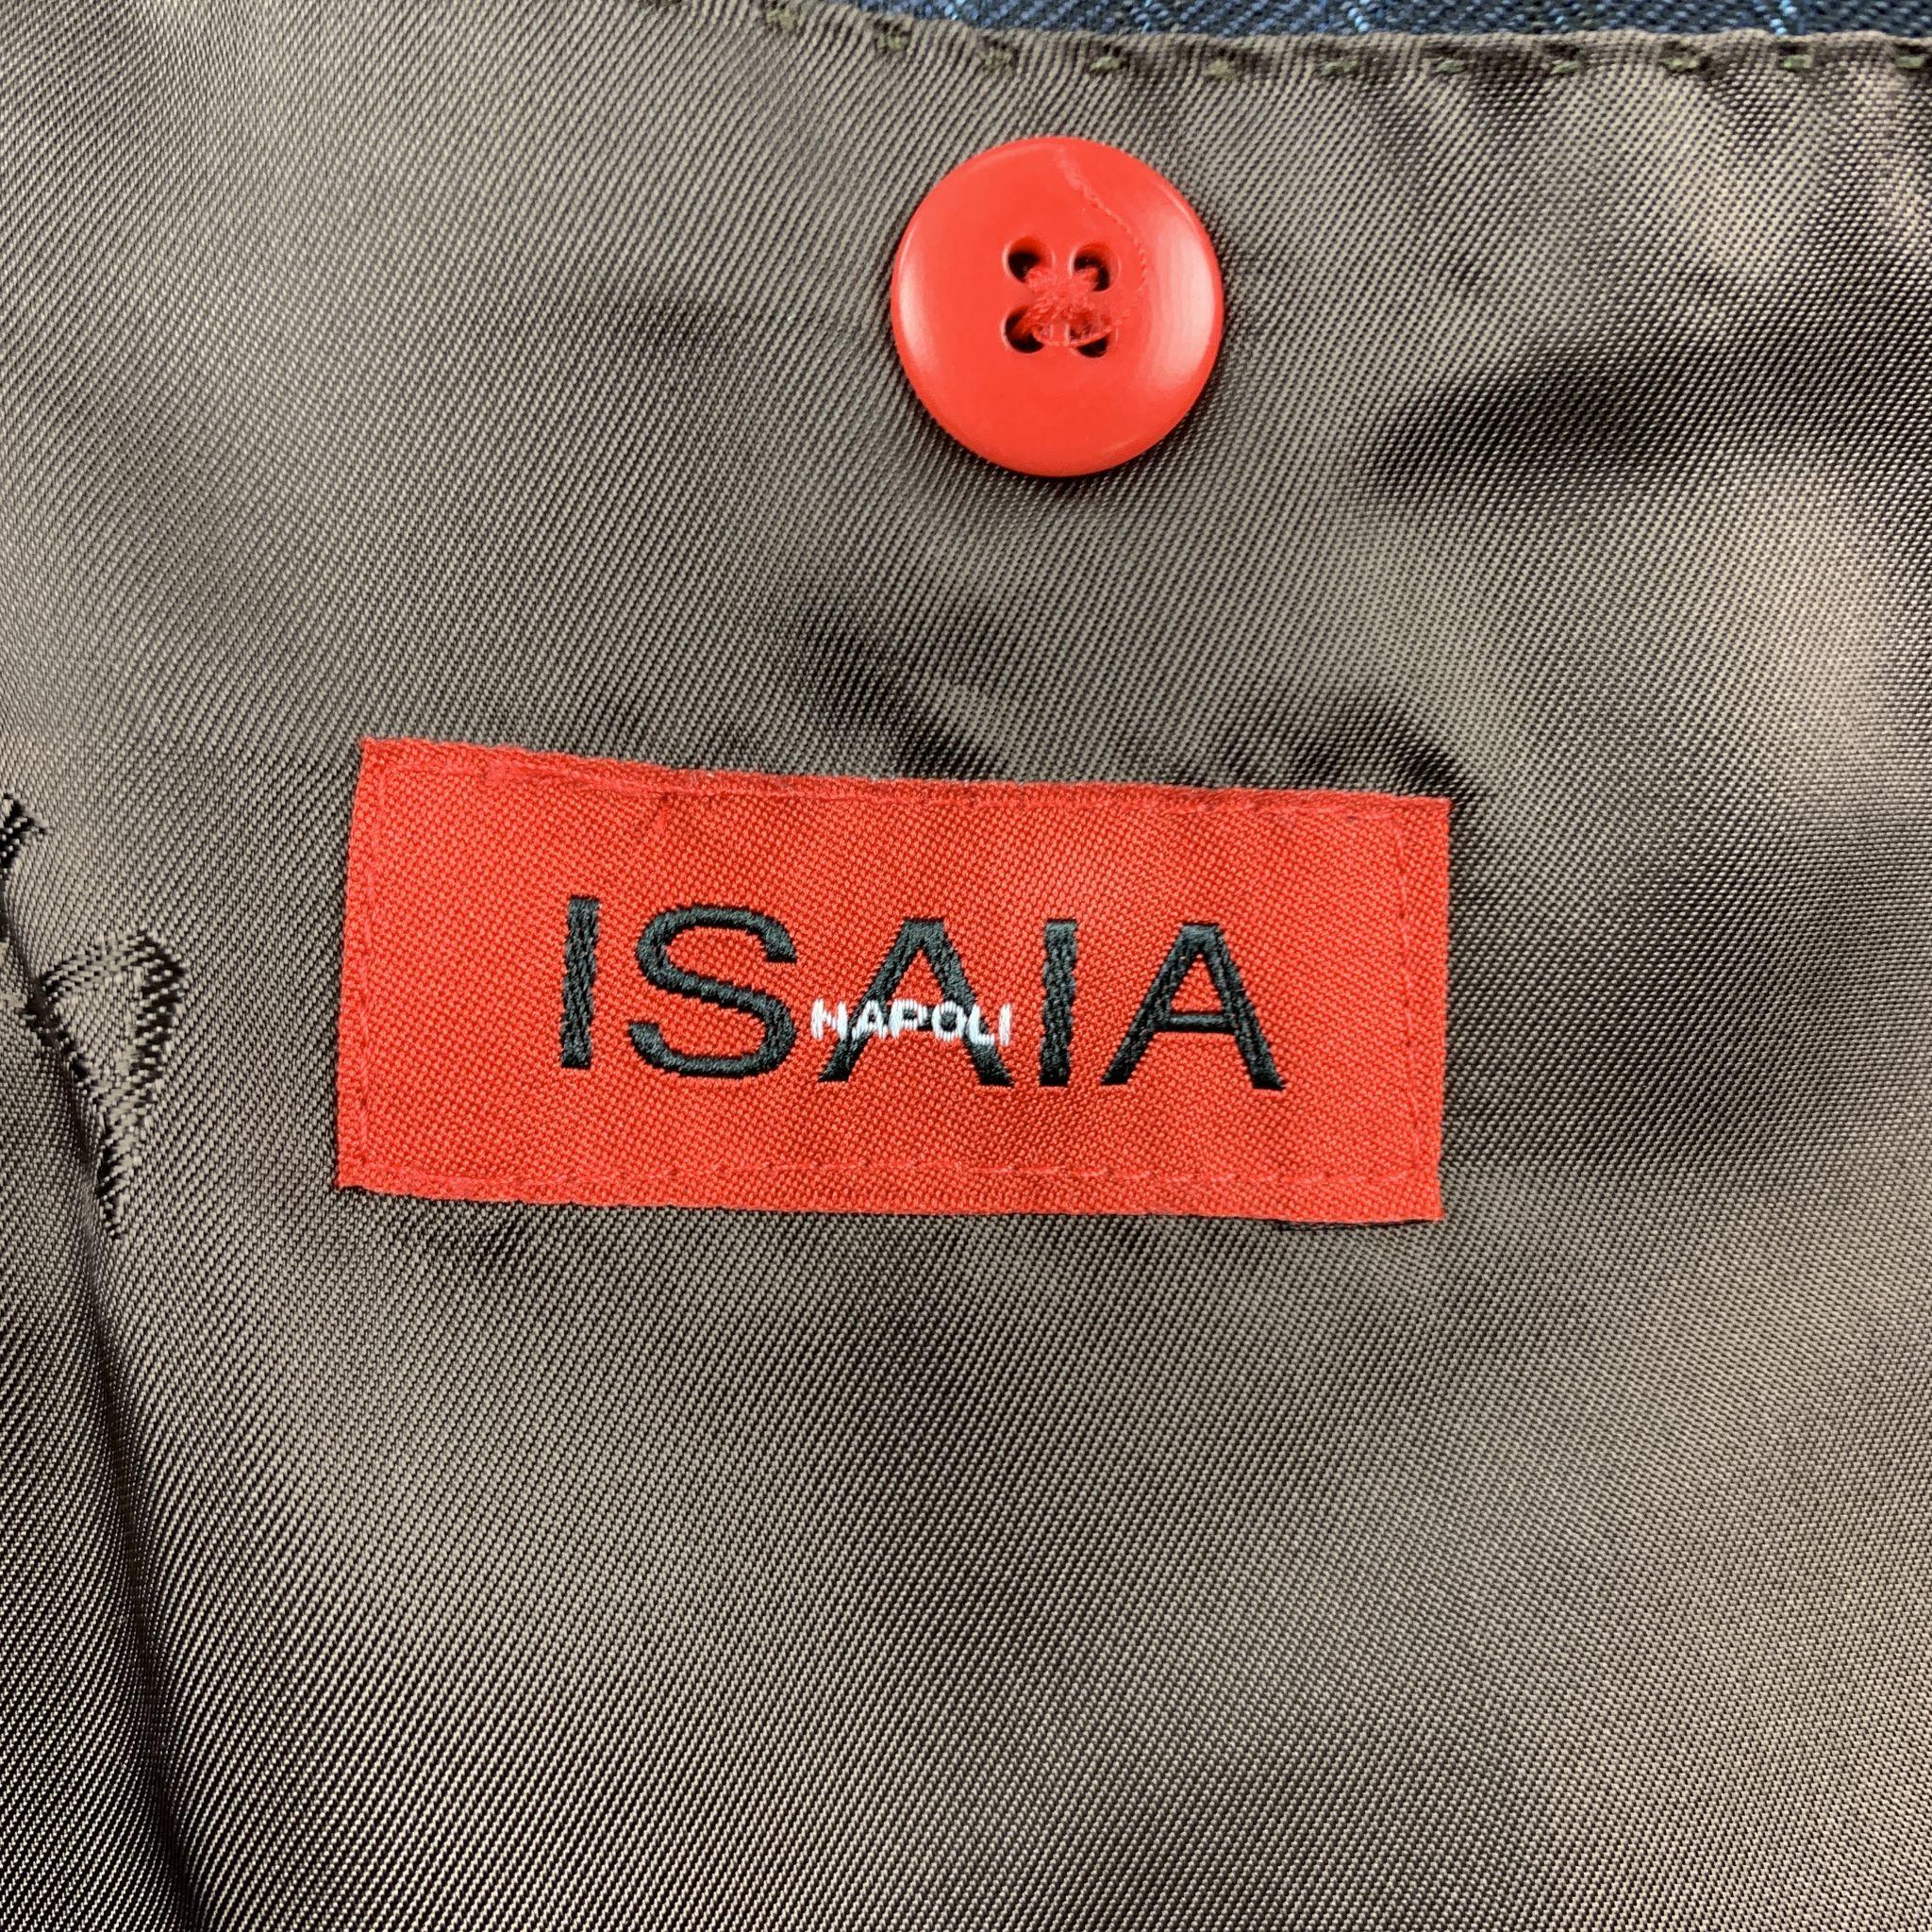 Men's ISAIA Chest Size 40 Long Stripe Navy Wool 32 34 Peak Lapel Suit